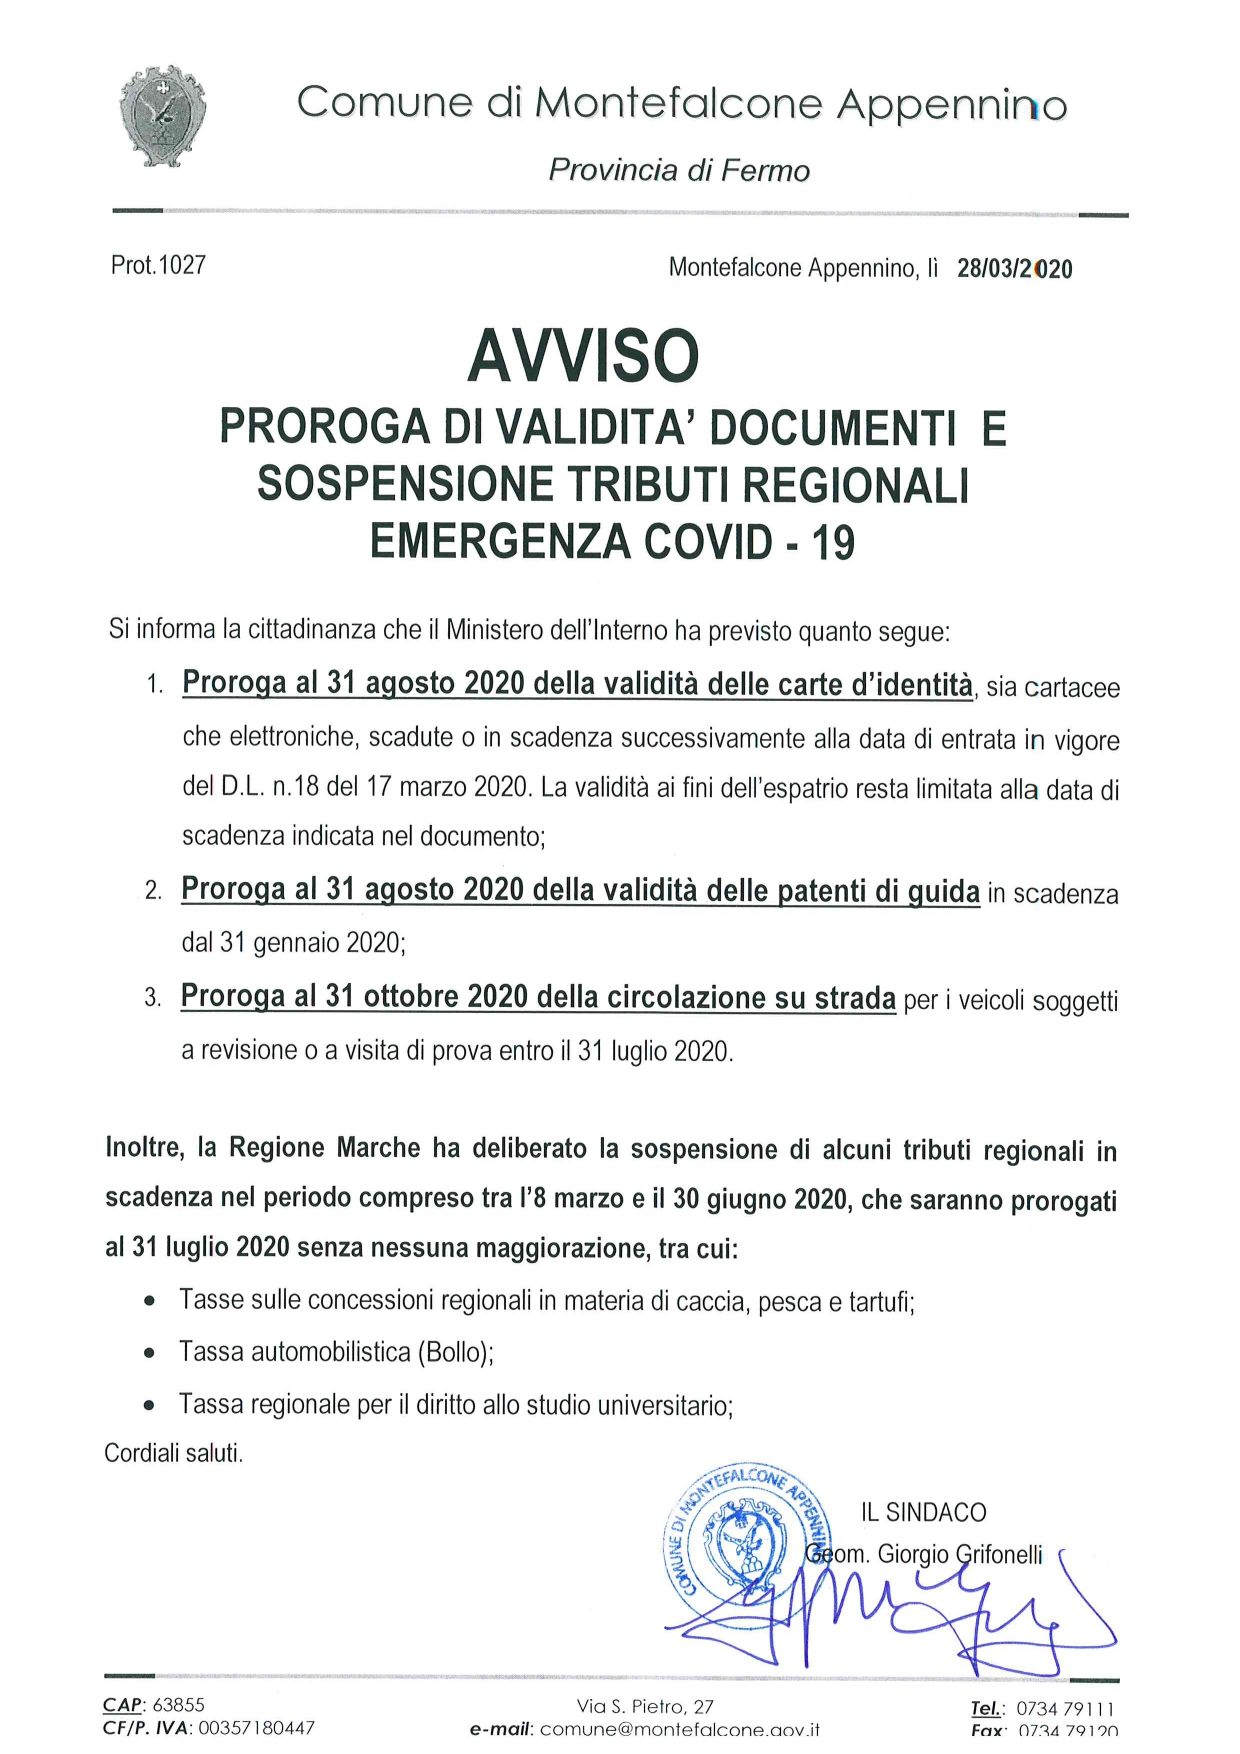 AVVISO PROROGA DI VALIDITA' DOCUMENTI E SOSPENSIONE TRIBUTI REGIONALI COVID - 19